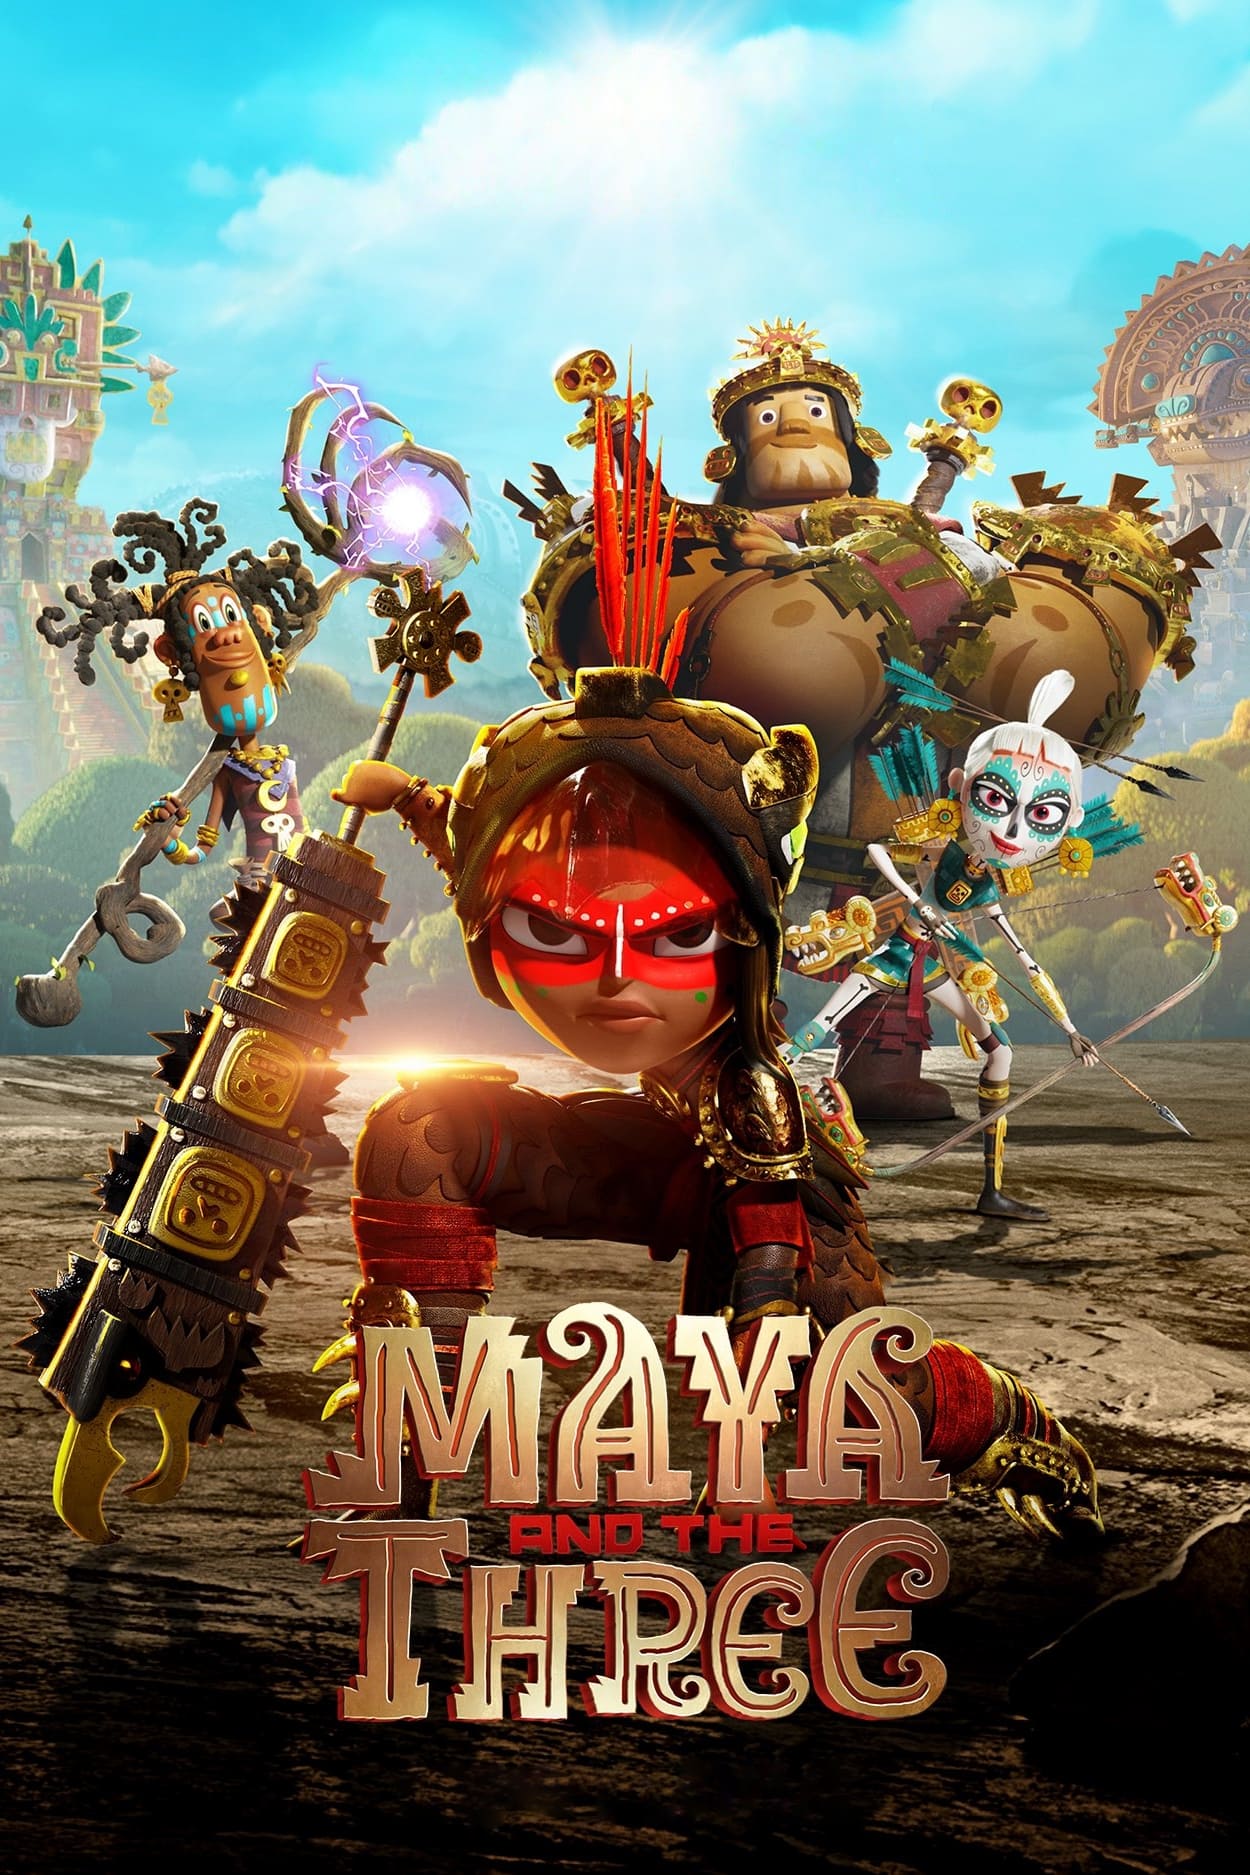 Maya e os 3 Guerreiros